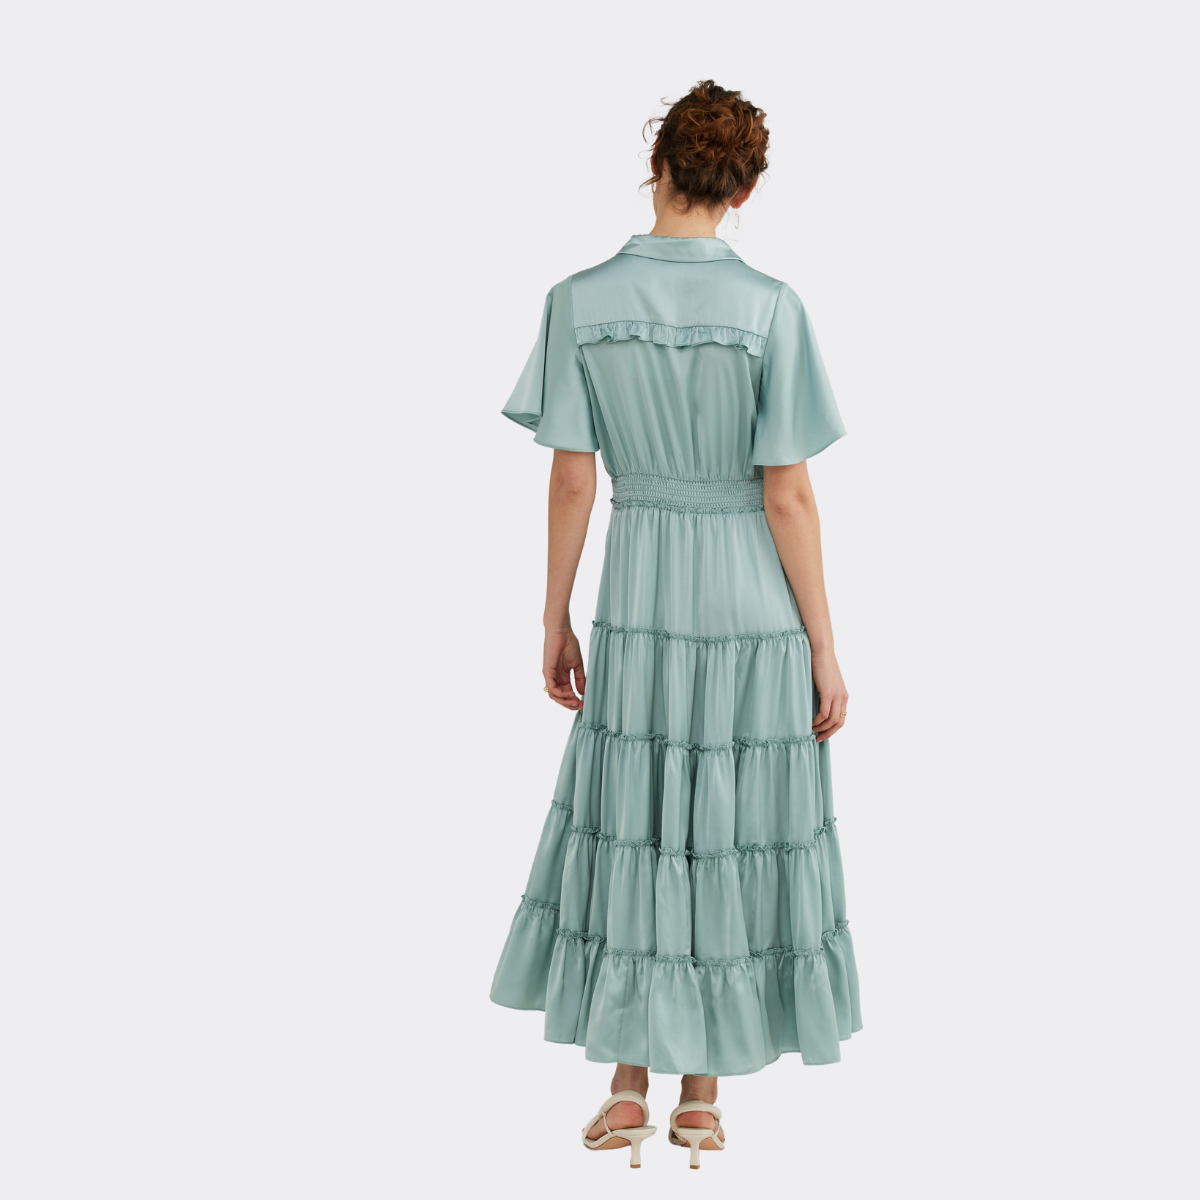 Lido Short Sleeved Dress